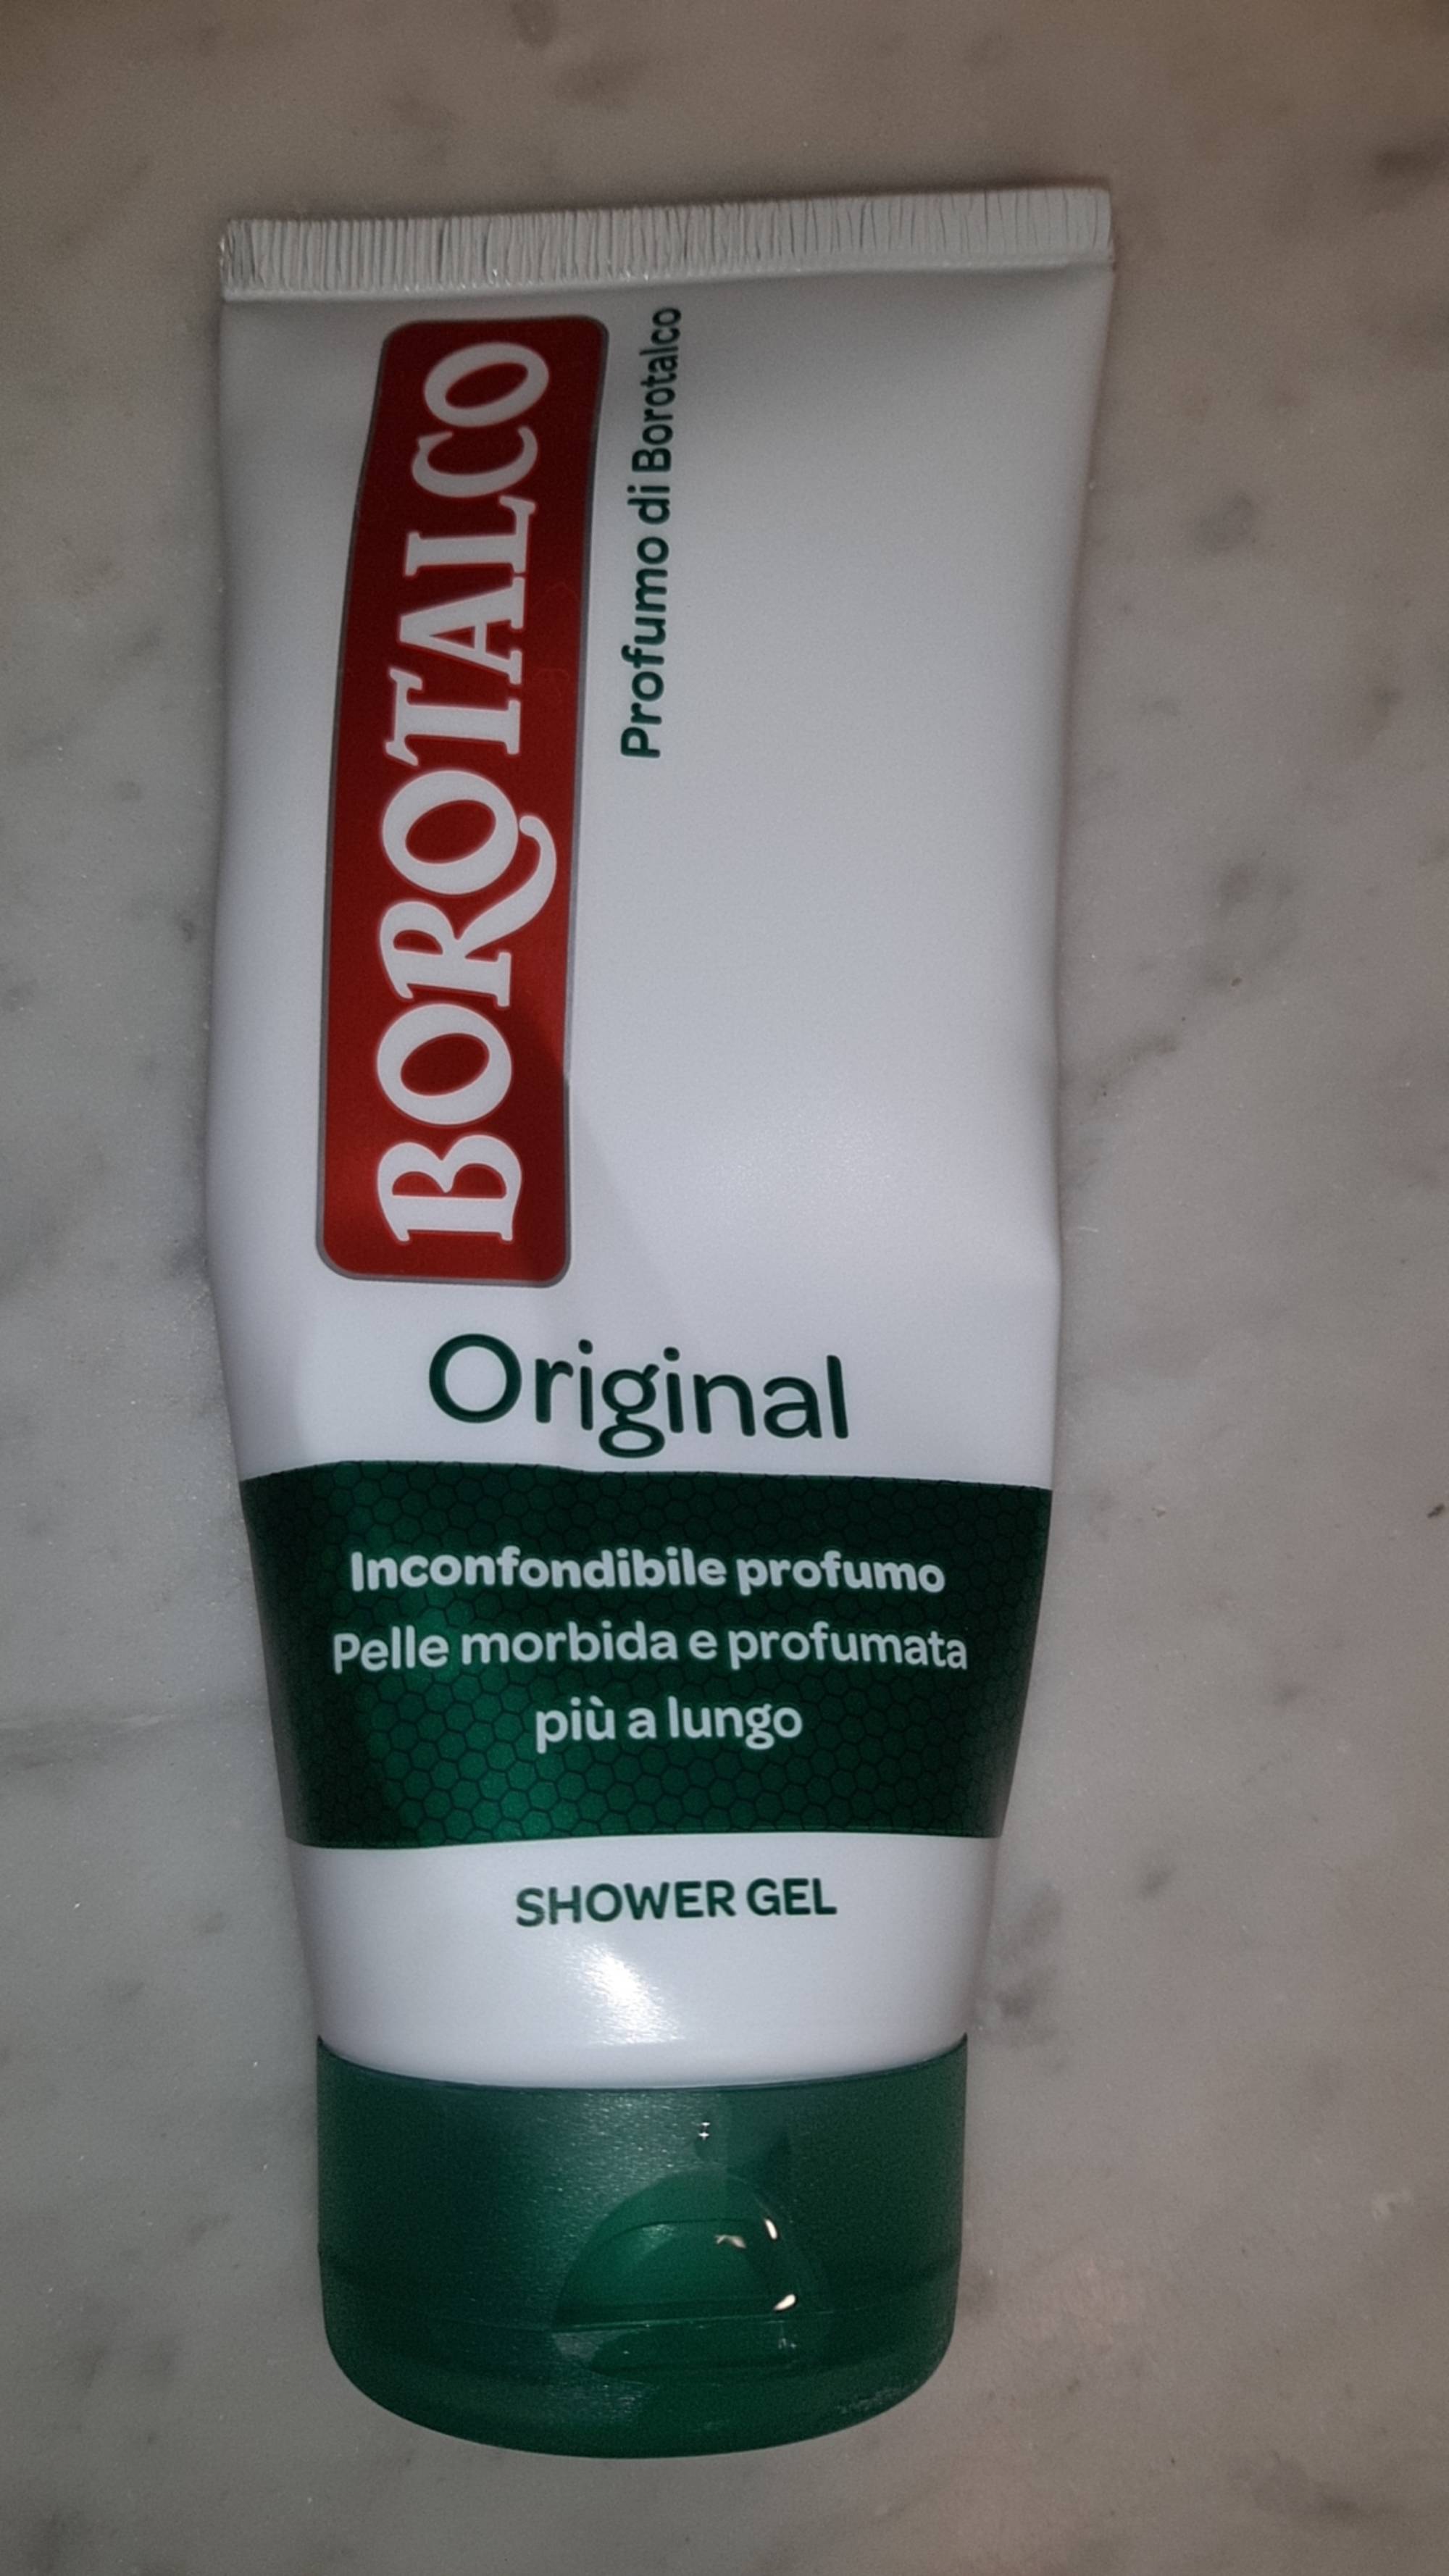 BOROTALCO - Original - Shower gel